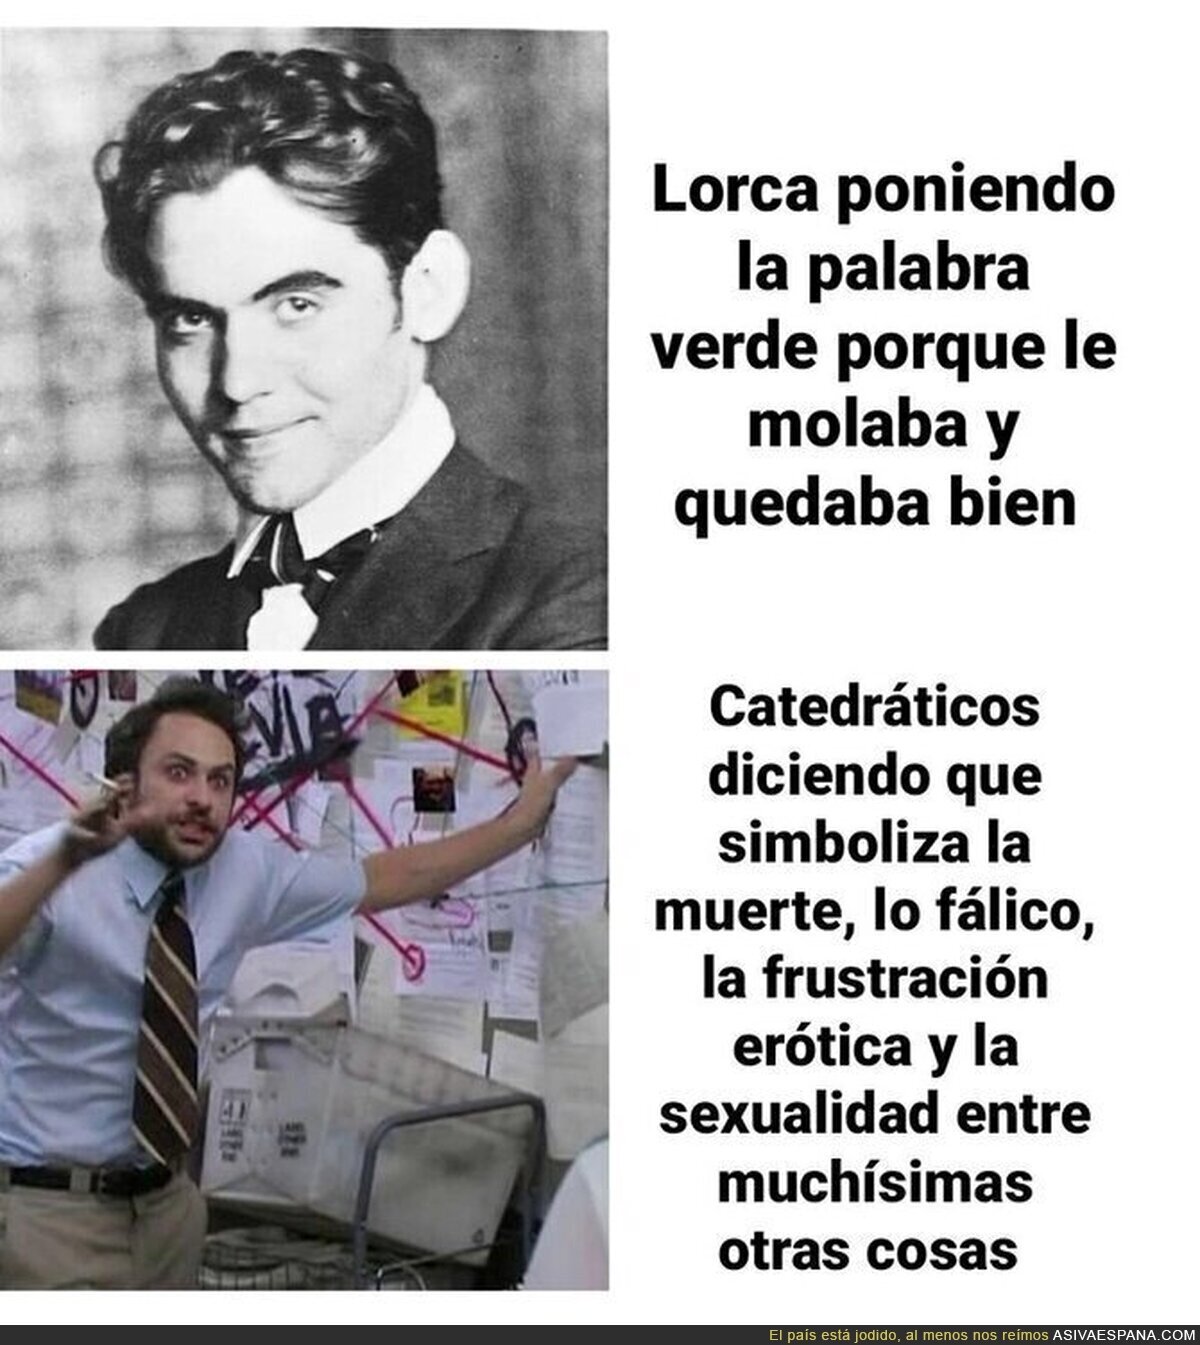 Las historias sobre Lorca